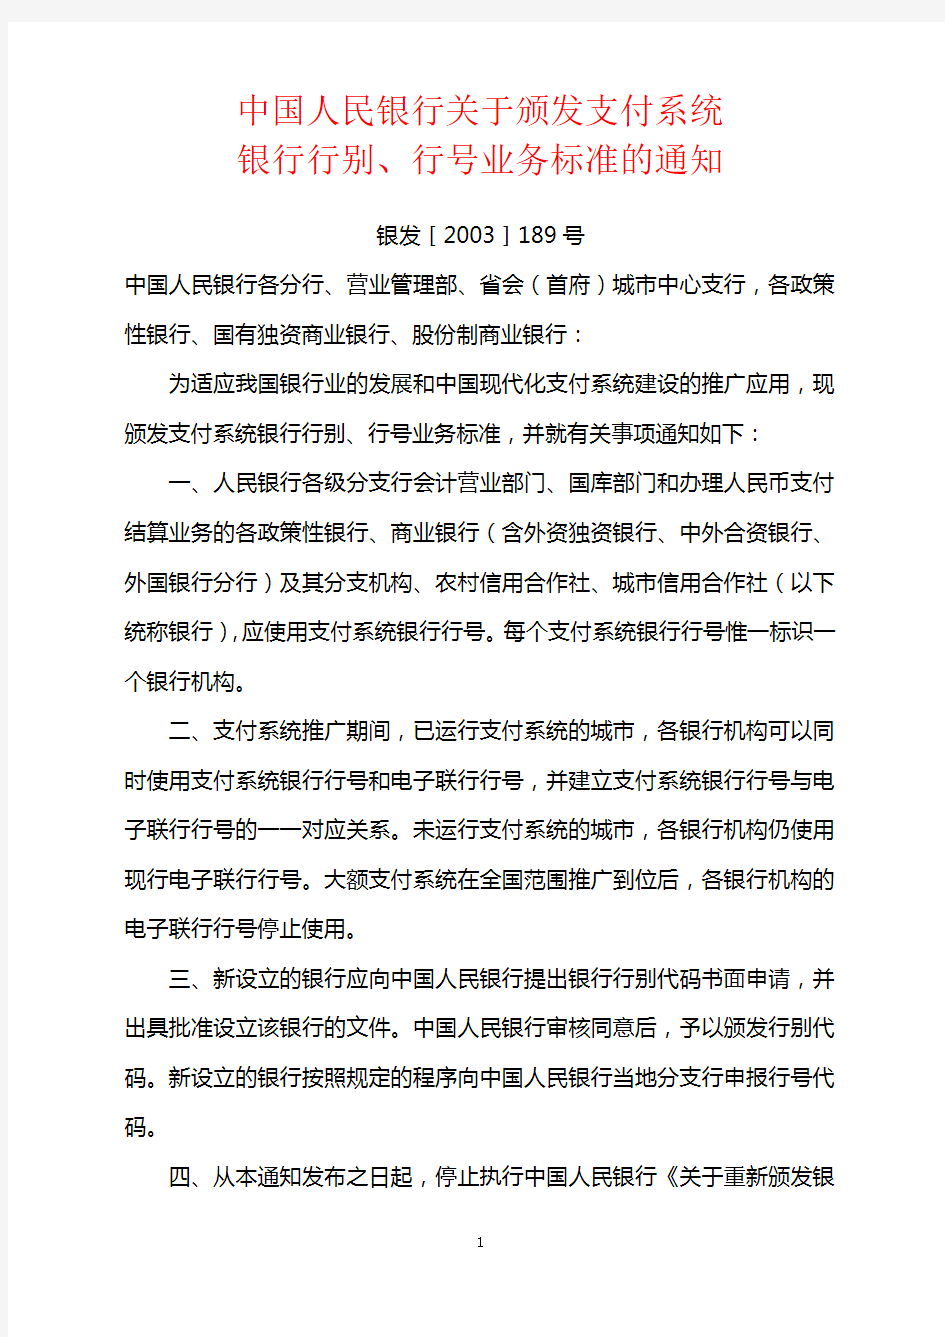 (二)《中国人民银行关于颁发支付系统银行行别、行号业务标准的通知》(银发〔2003〕189号)